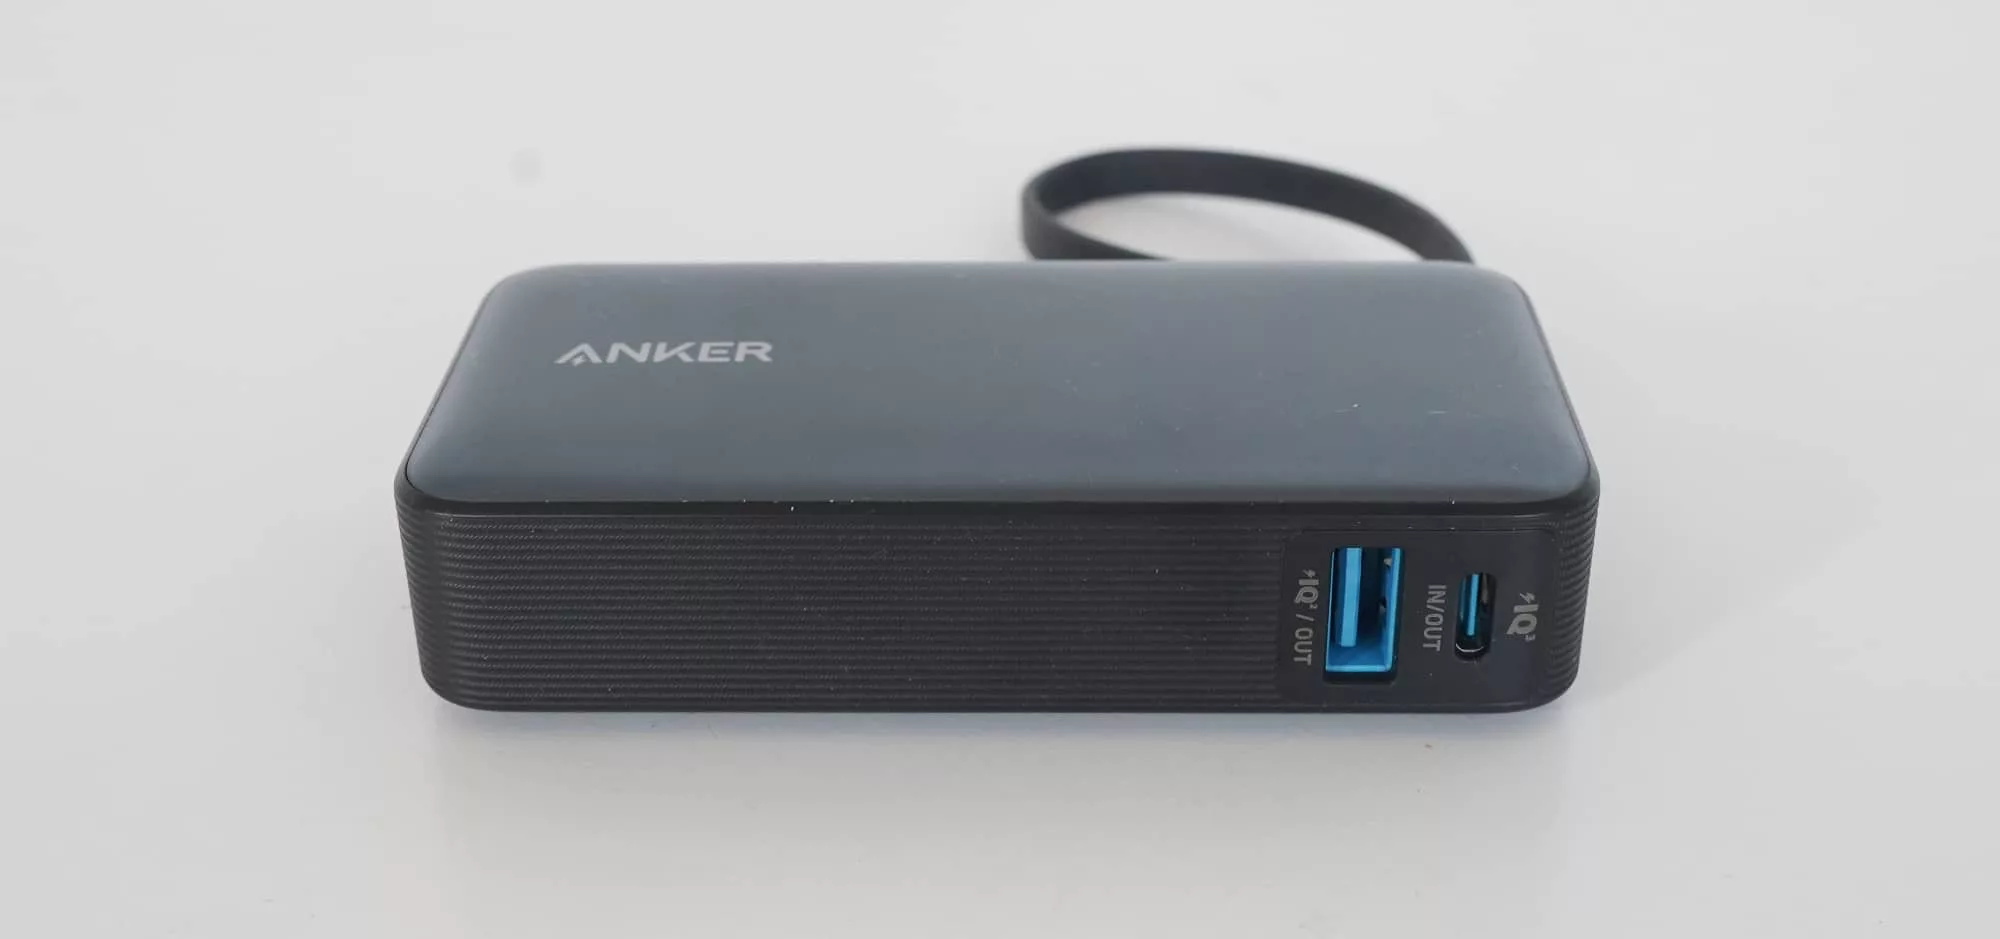 Anker Nano Power Bank 30W review – Pickr